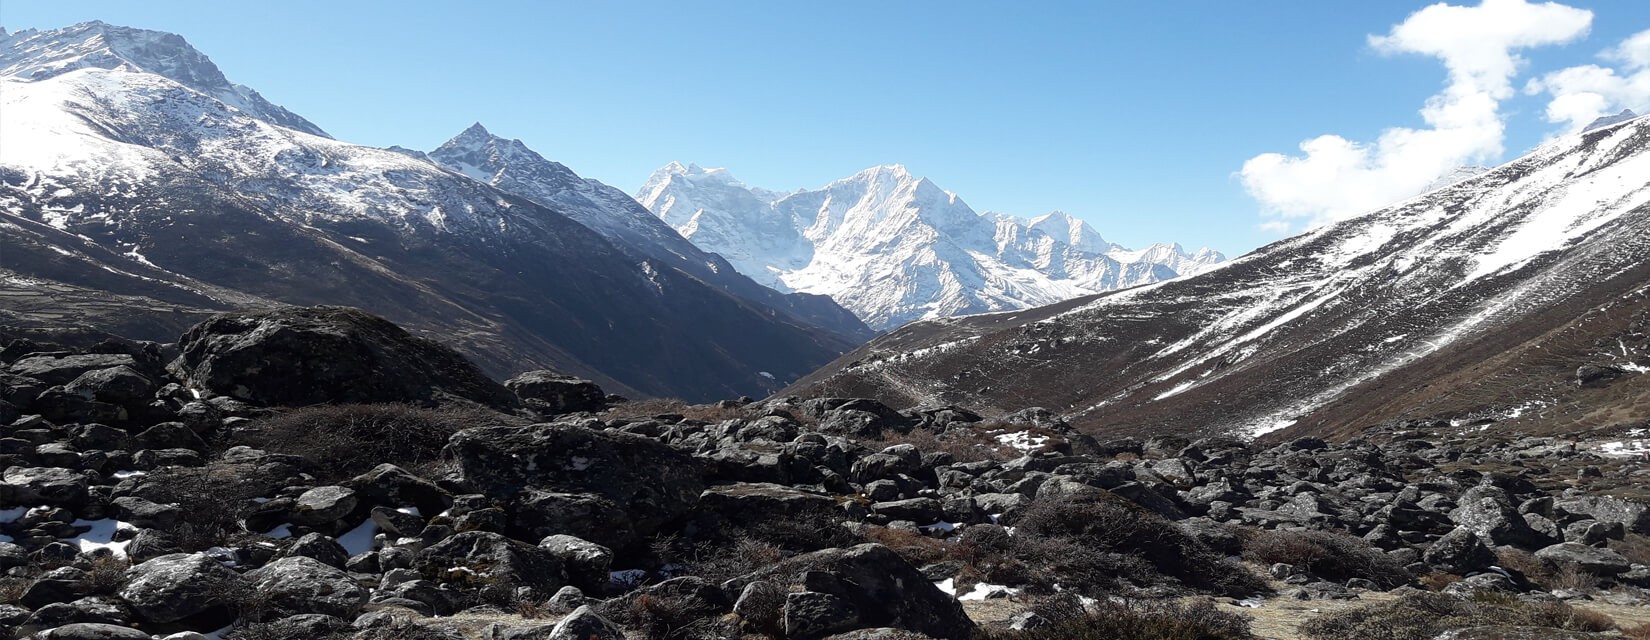 Cho la pass - Everest